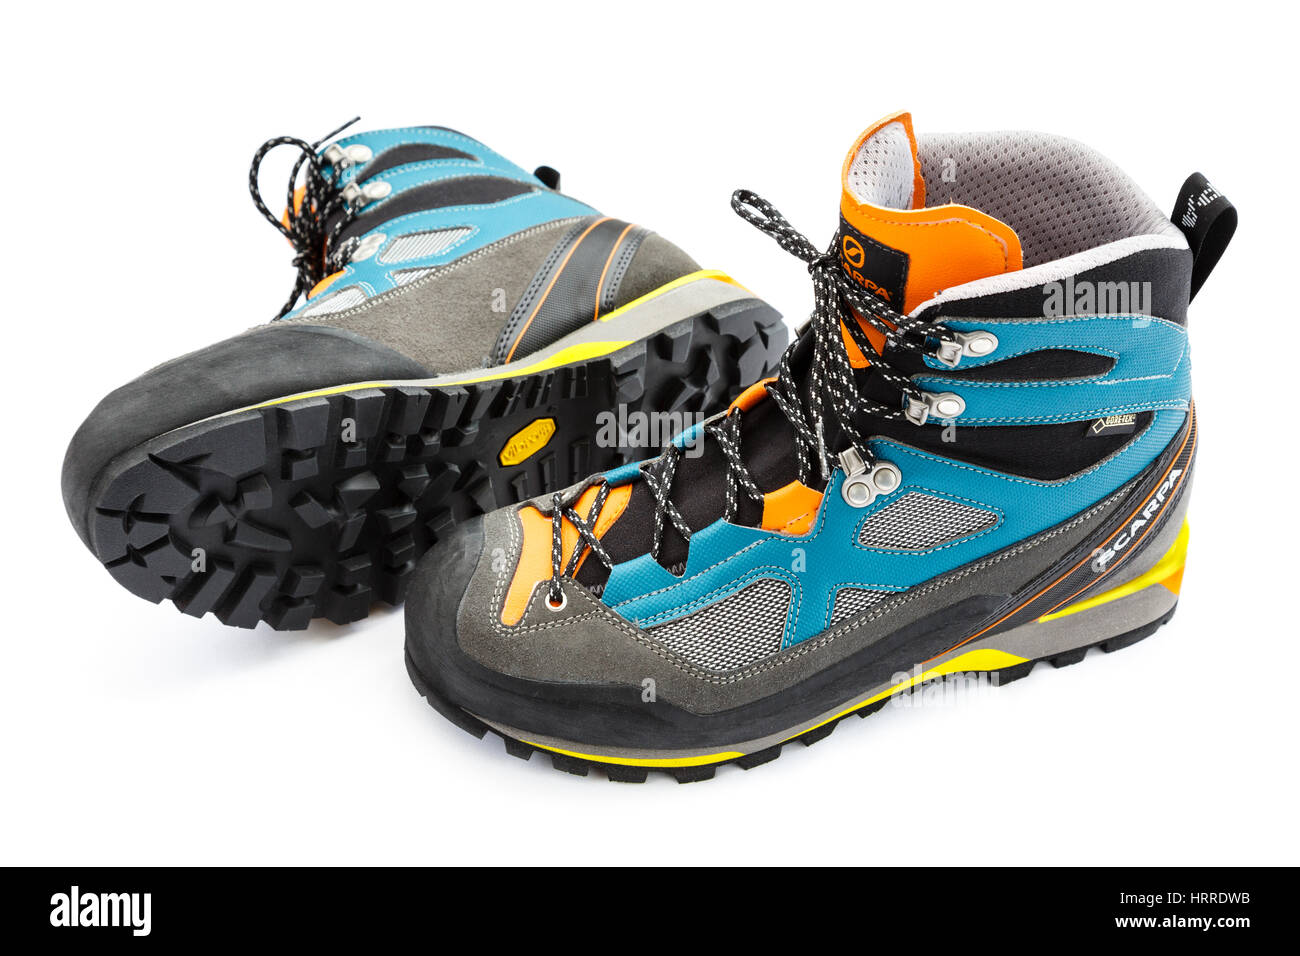 Scarpa Rebel Lite GTX Gore-Tex bottes de randonnée bordée avec semelle en caoutchouc Vibram isolé sur un fond blanc. UK Banque D'Images